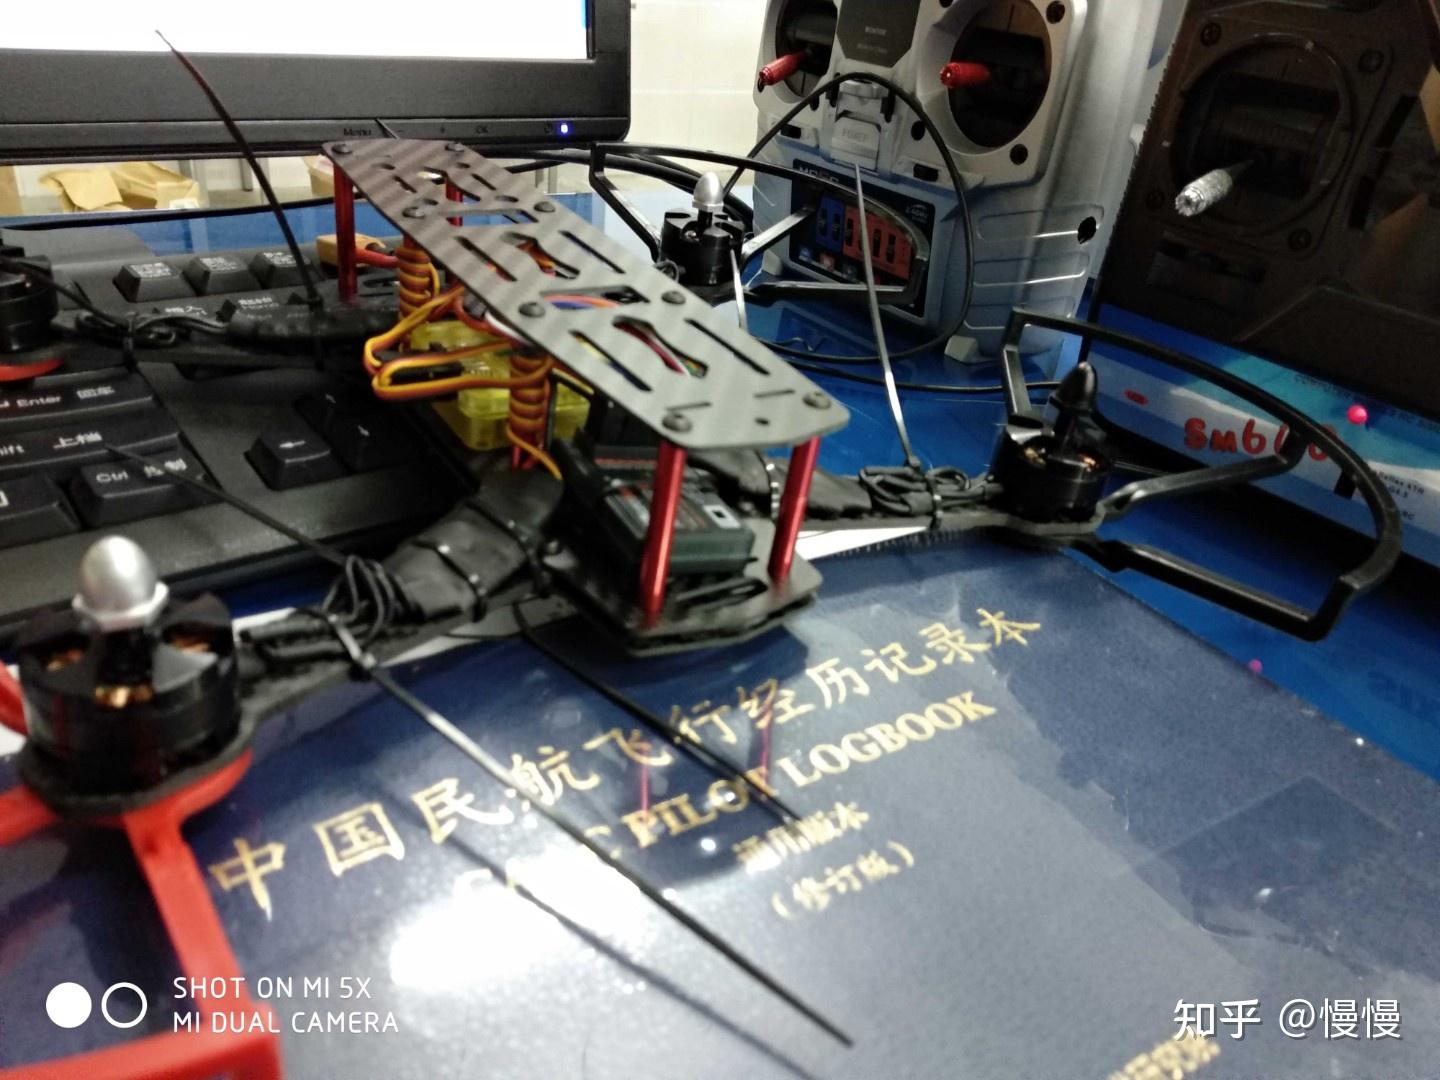 无人机驾驶证考试项目、流程及考试标准 - 无人机培训学校 - 深圳中科大智航空技术有限公司